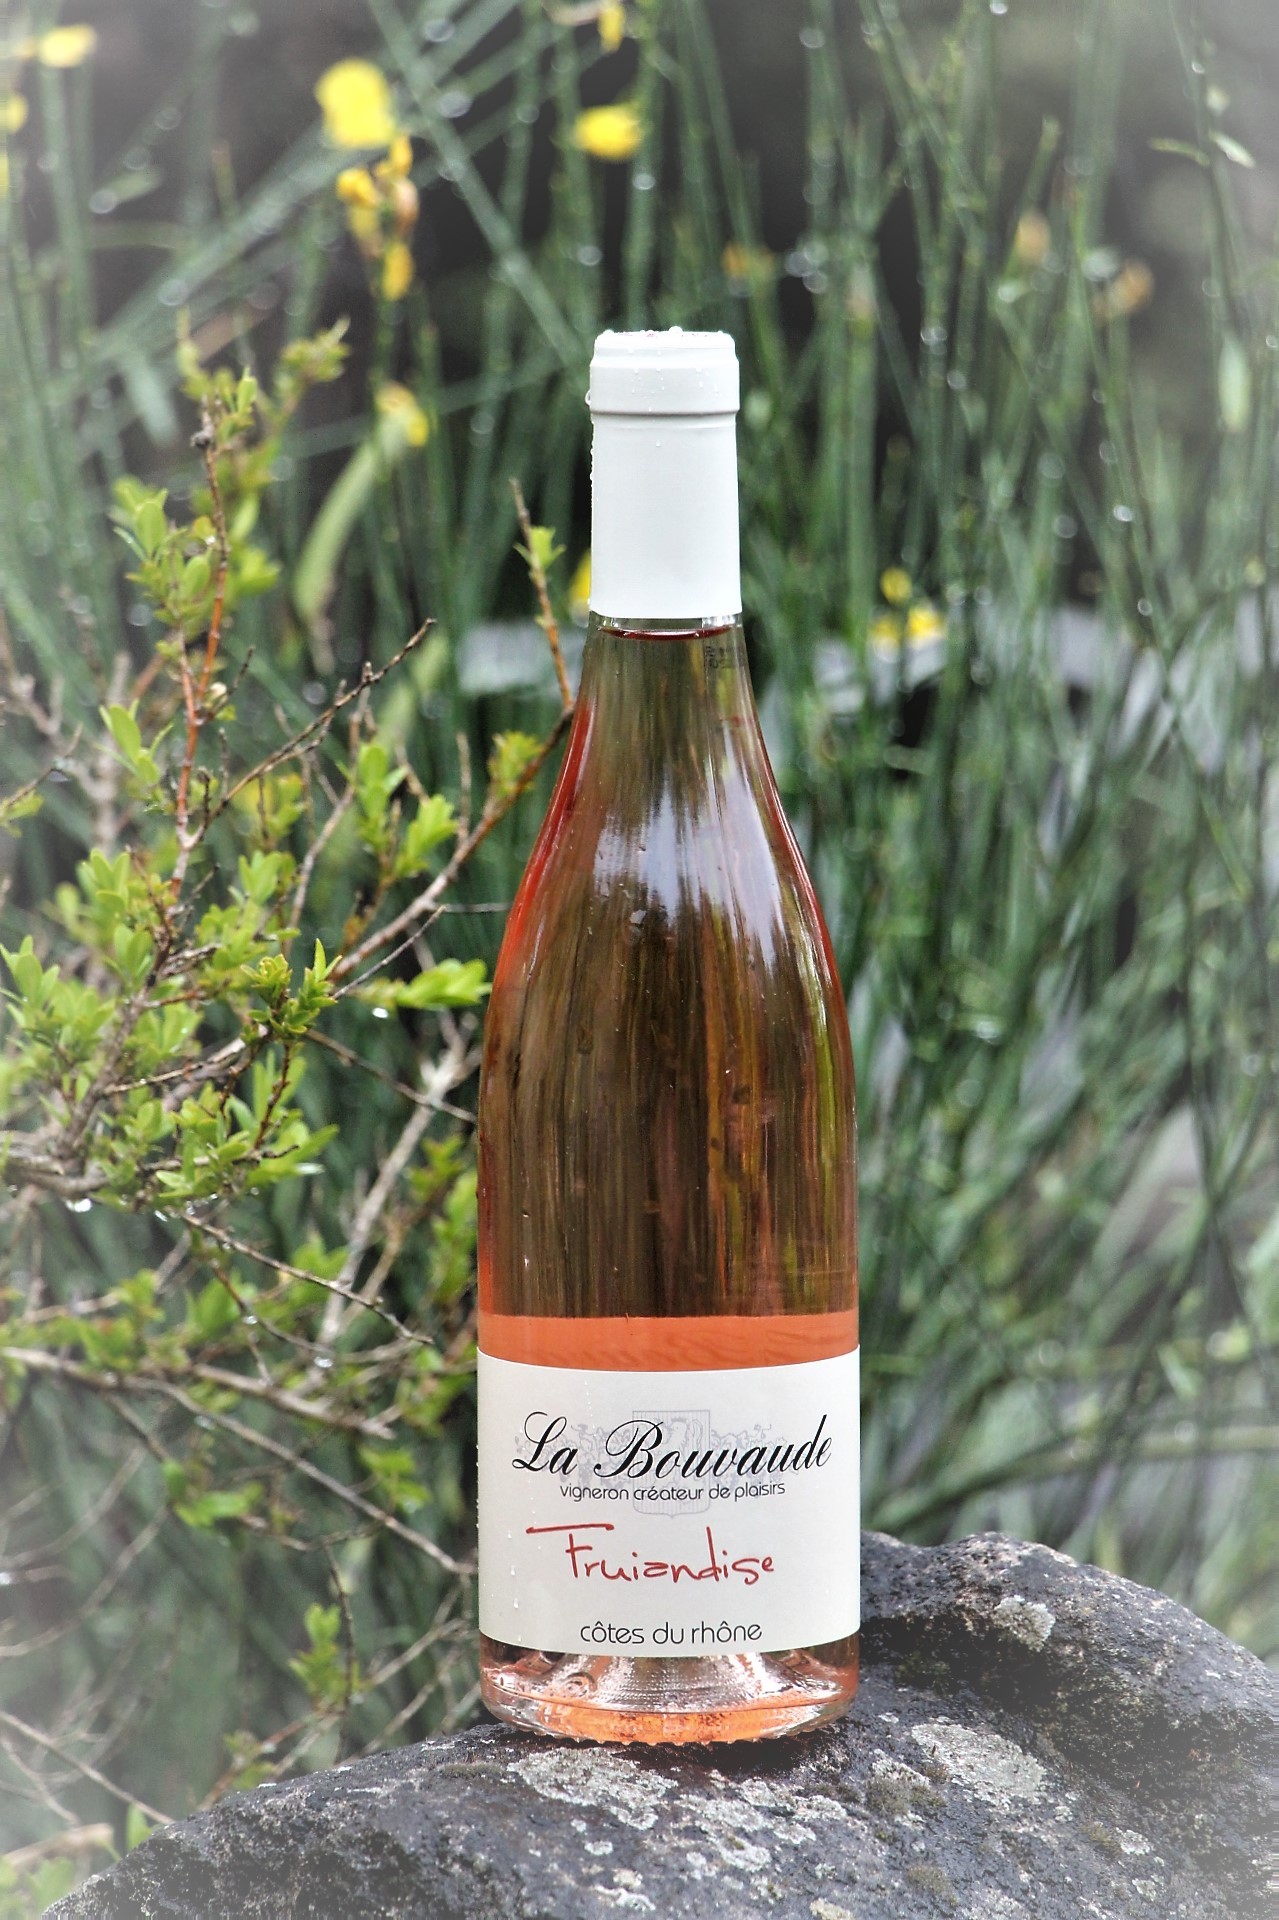 Bottle of rosé wine on a rock La Bouvaude Fruiandise Rousset les vignes